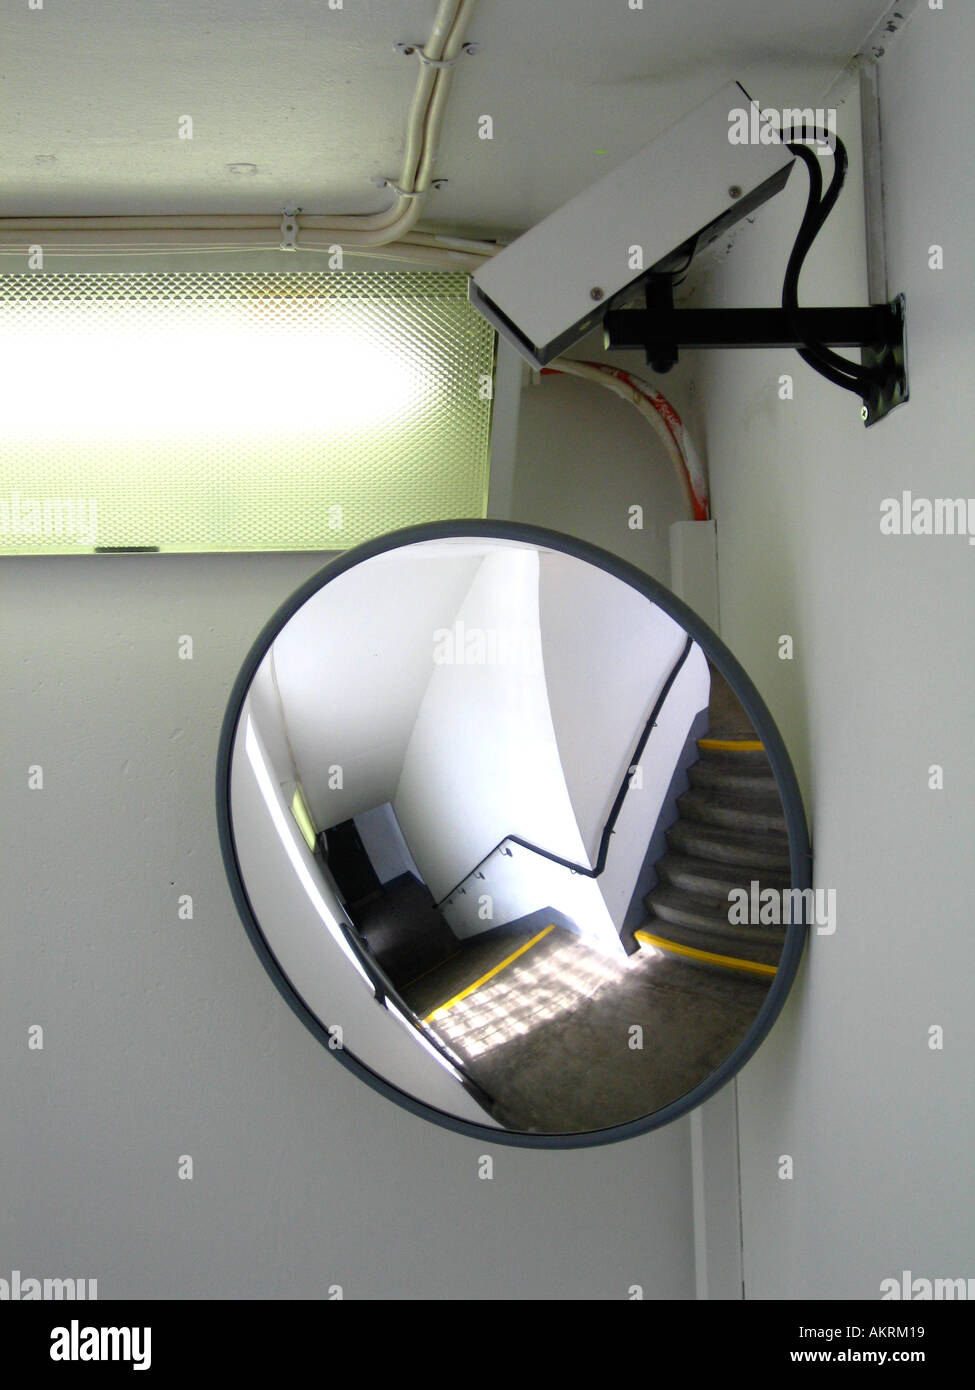 Espejo espía fotografías e imágenes de alta resolución - Alamy